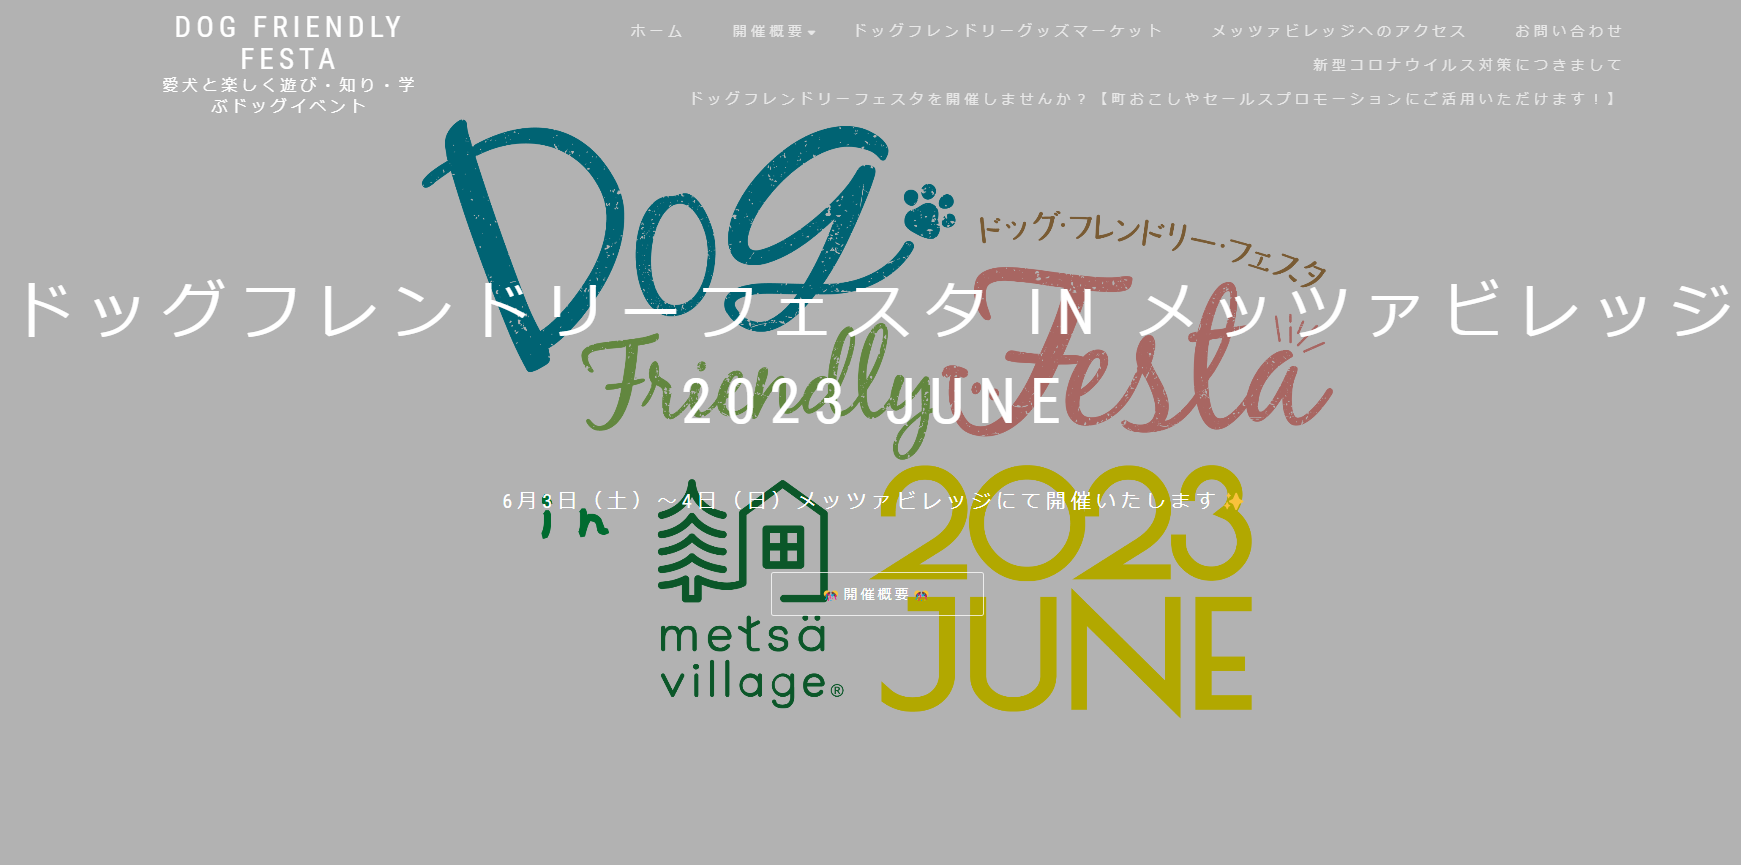 DOG FRIENDLY FESTA in metsa village 2023 JUNE